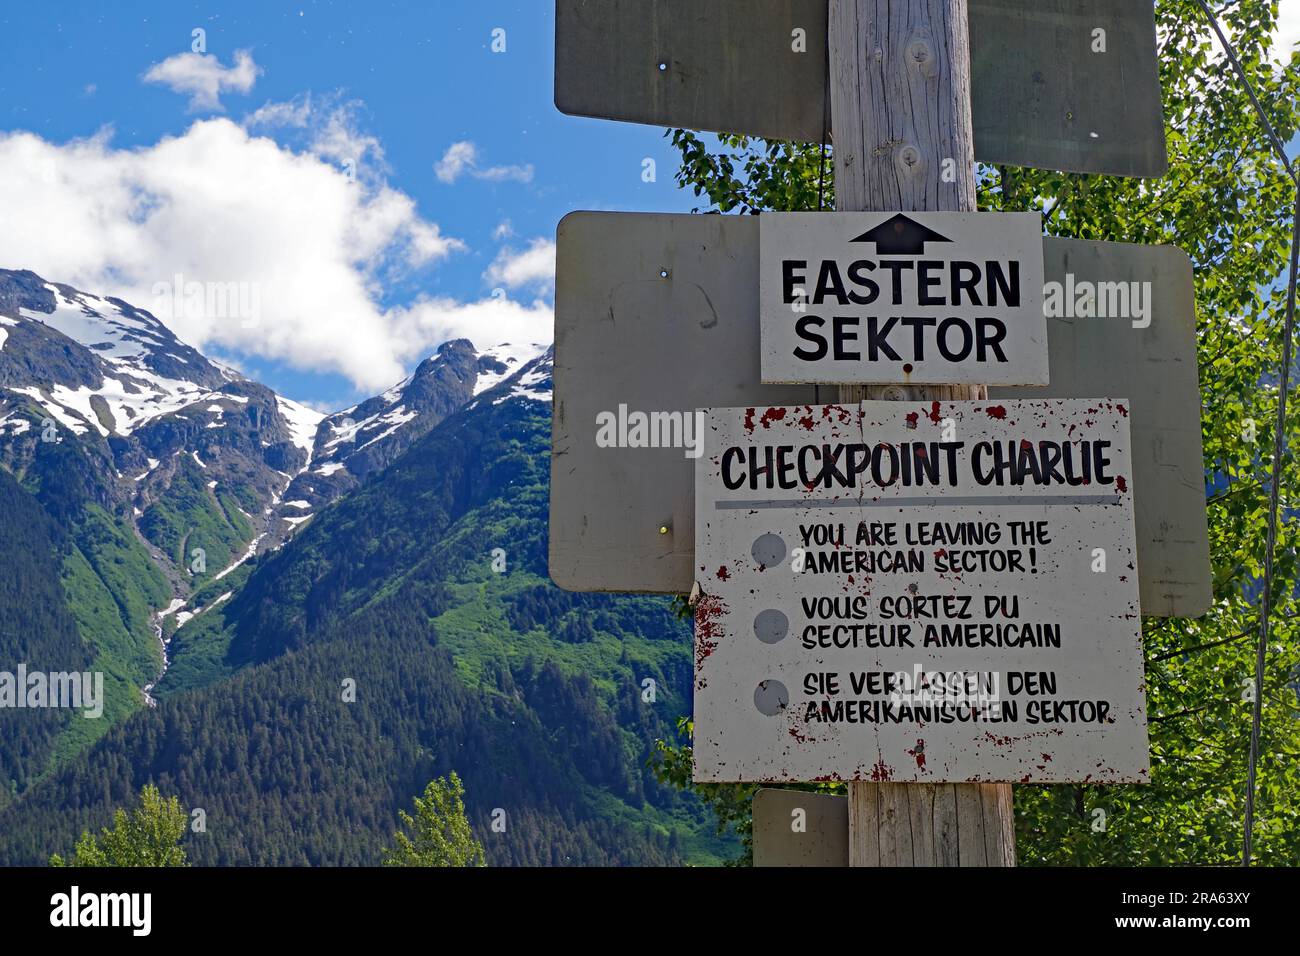 Ein Schild weist darauf hin, dass der östliche Sektor verlassen wird, hohe Berge im Hintergrund, Checkpoint Charlie, Geisterstadt Hyder, Alaska, USA Stockfoto